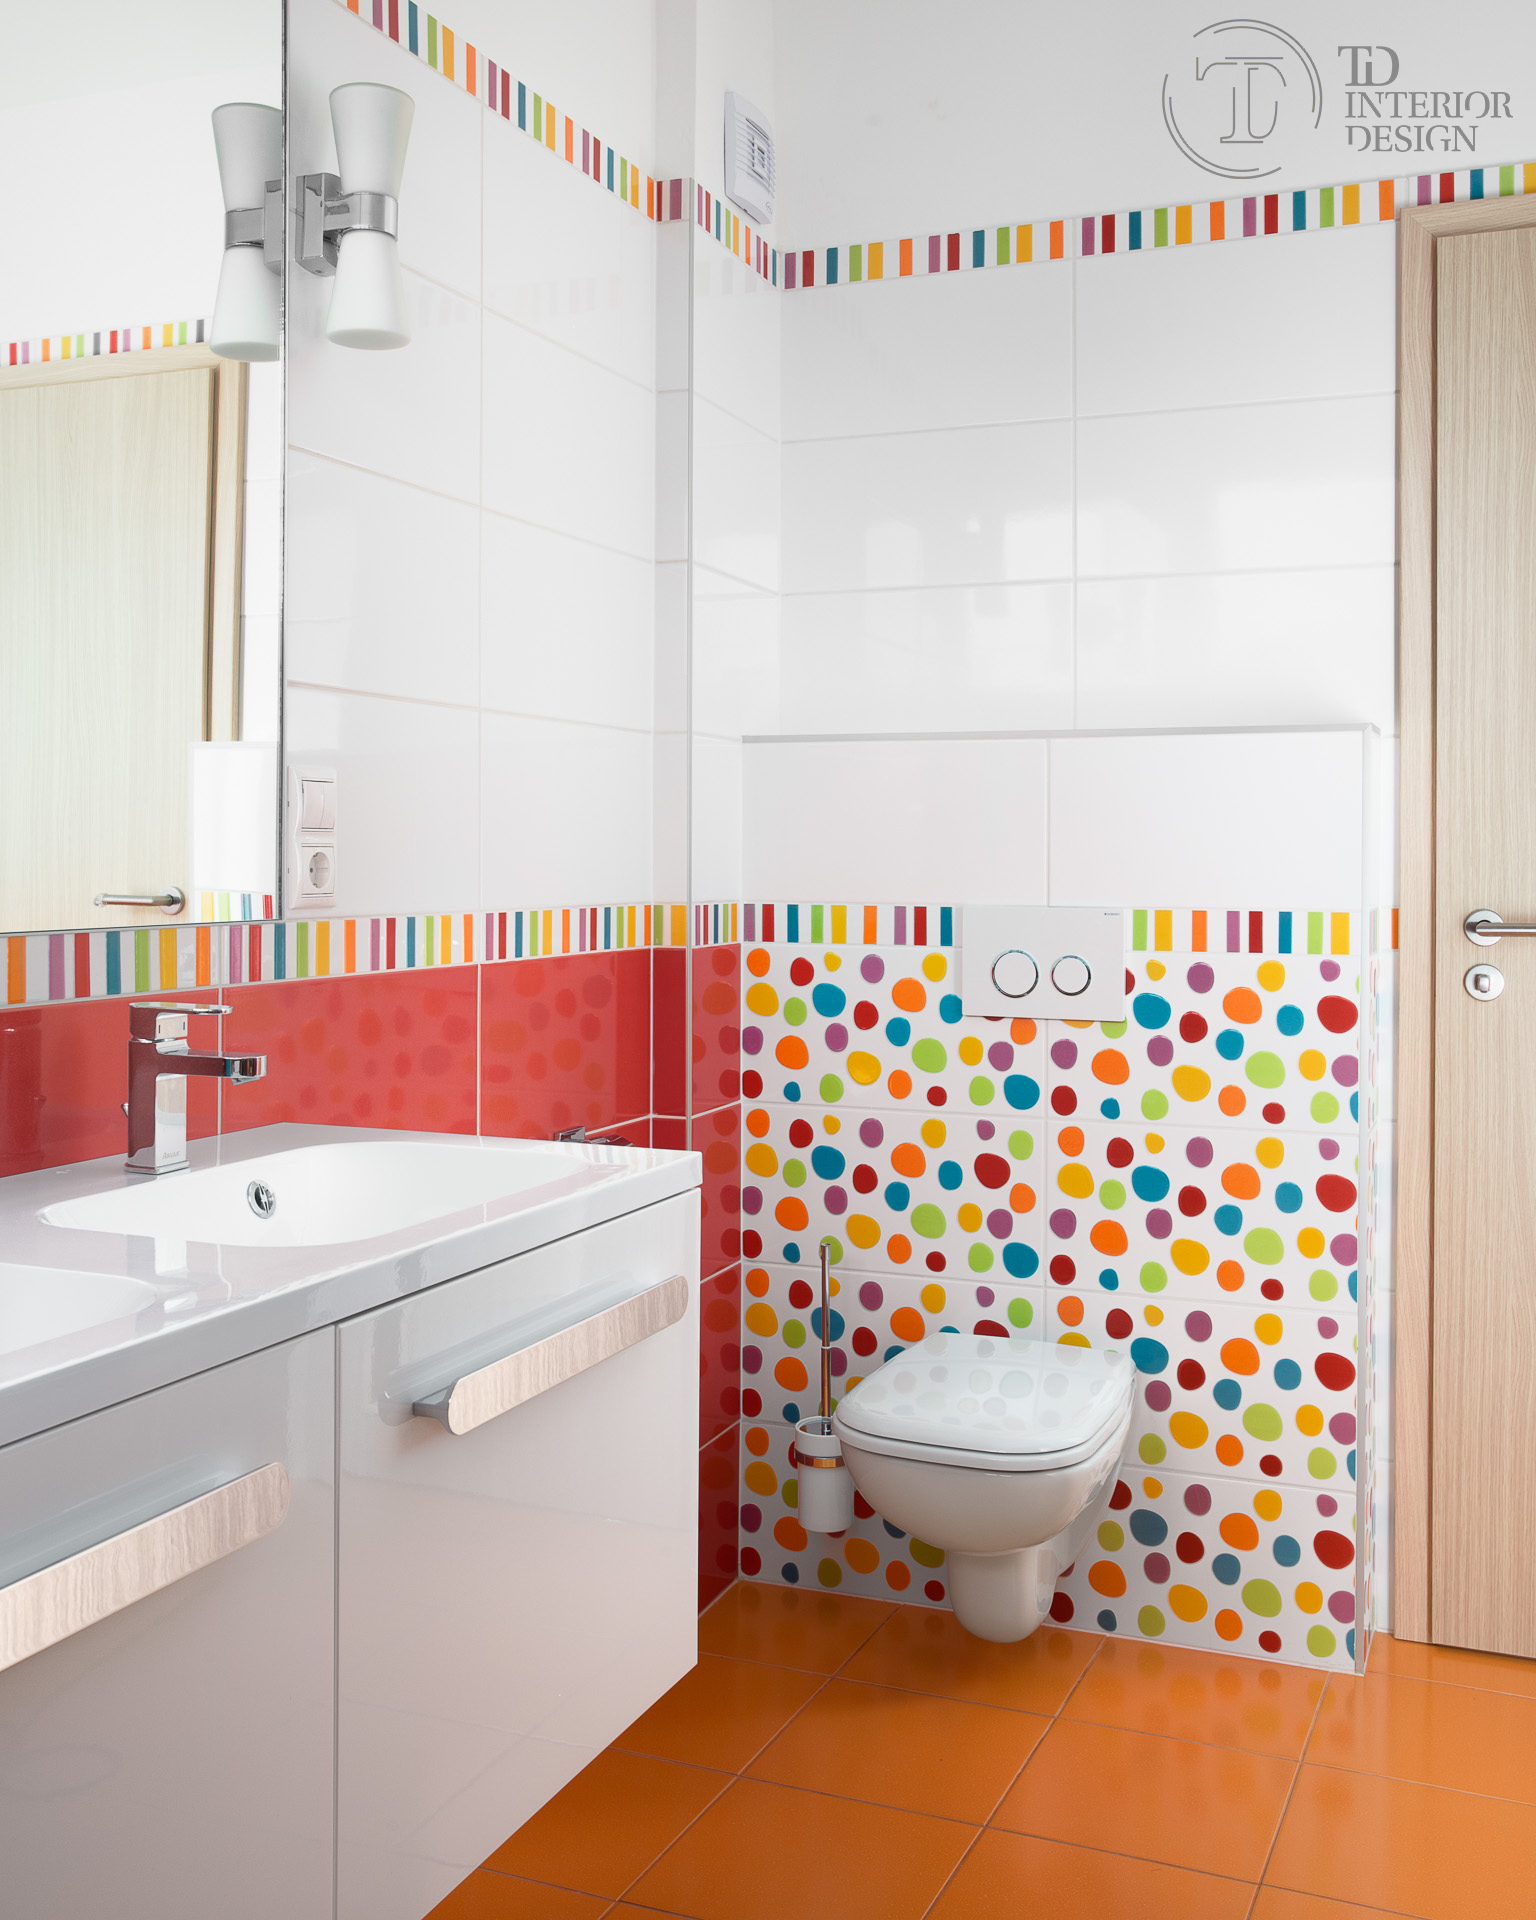 A gyerek fürdőszoba vidám színekkel és praktikus szaniterekkel az igazi.